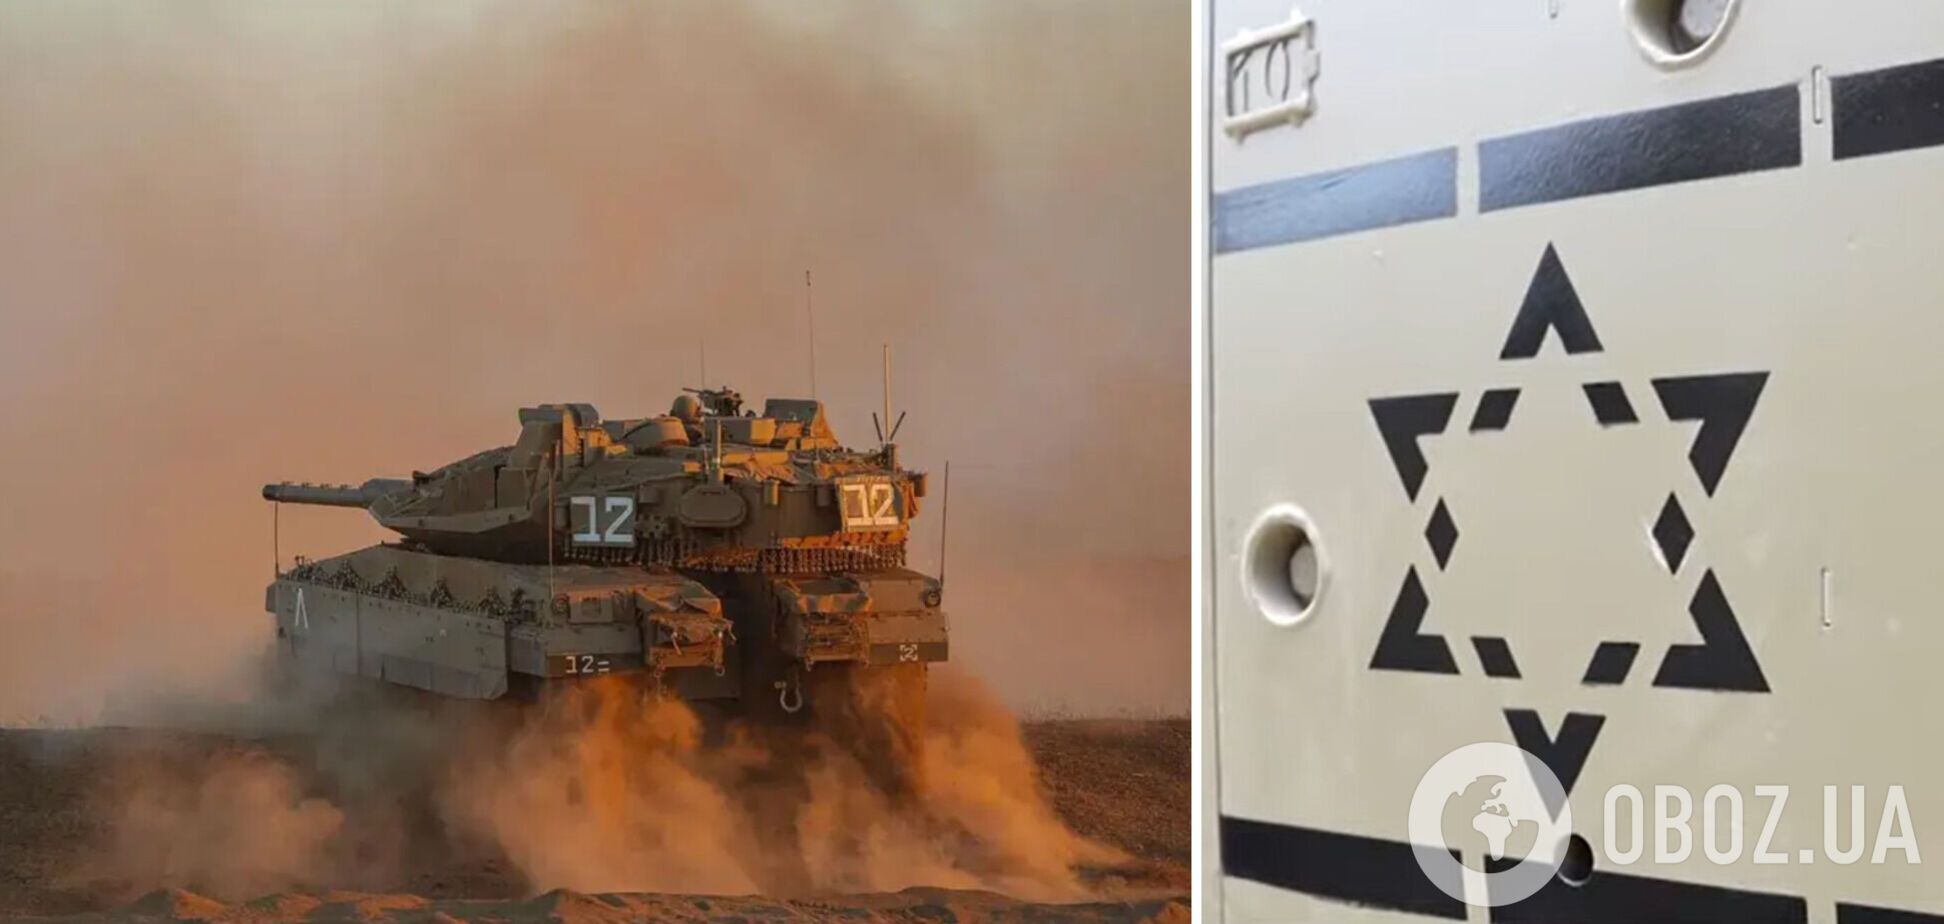 Ізраїль представив надсучасний танк нового покоління, обладнаний штучним інтелектом. Фото і відео